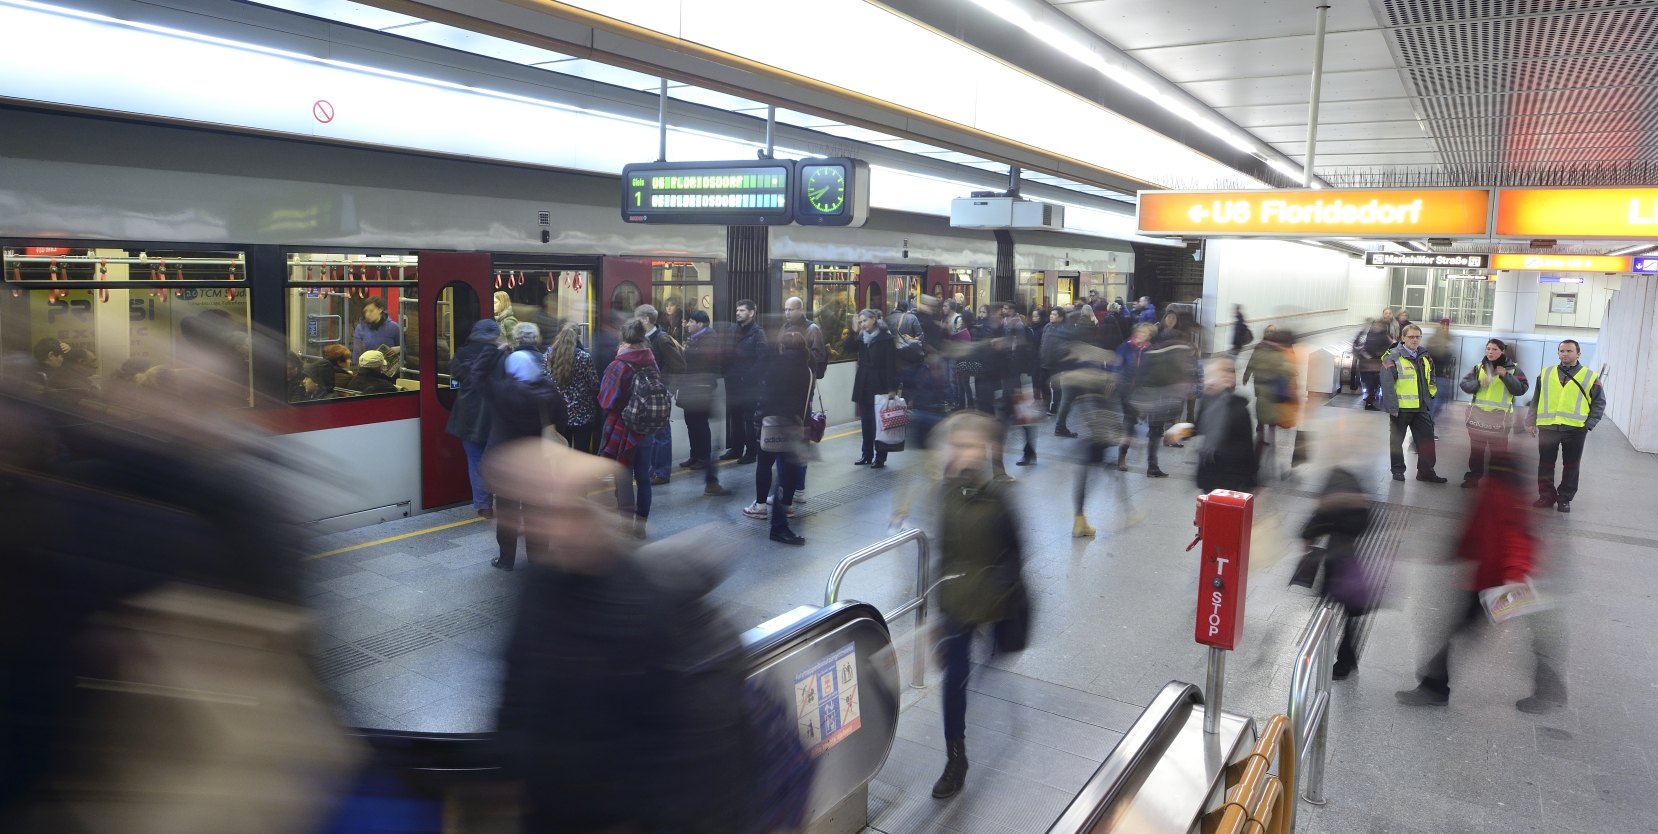 Viele Tausend Fahrgäste nutzen täglich die Wiener Linien, in diesem Bild die U-Bahn der Station Westbahnhof.